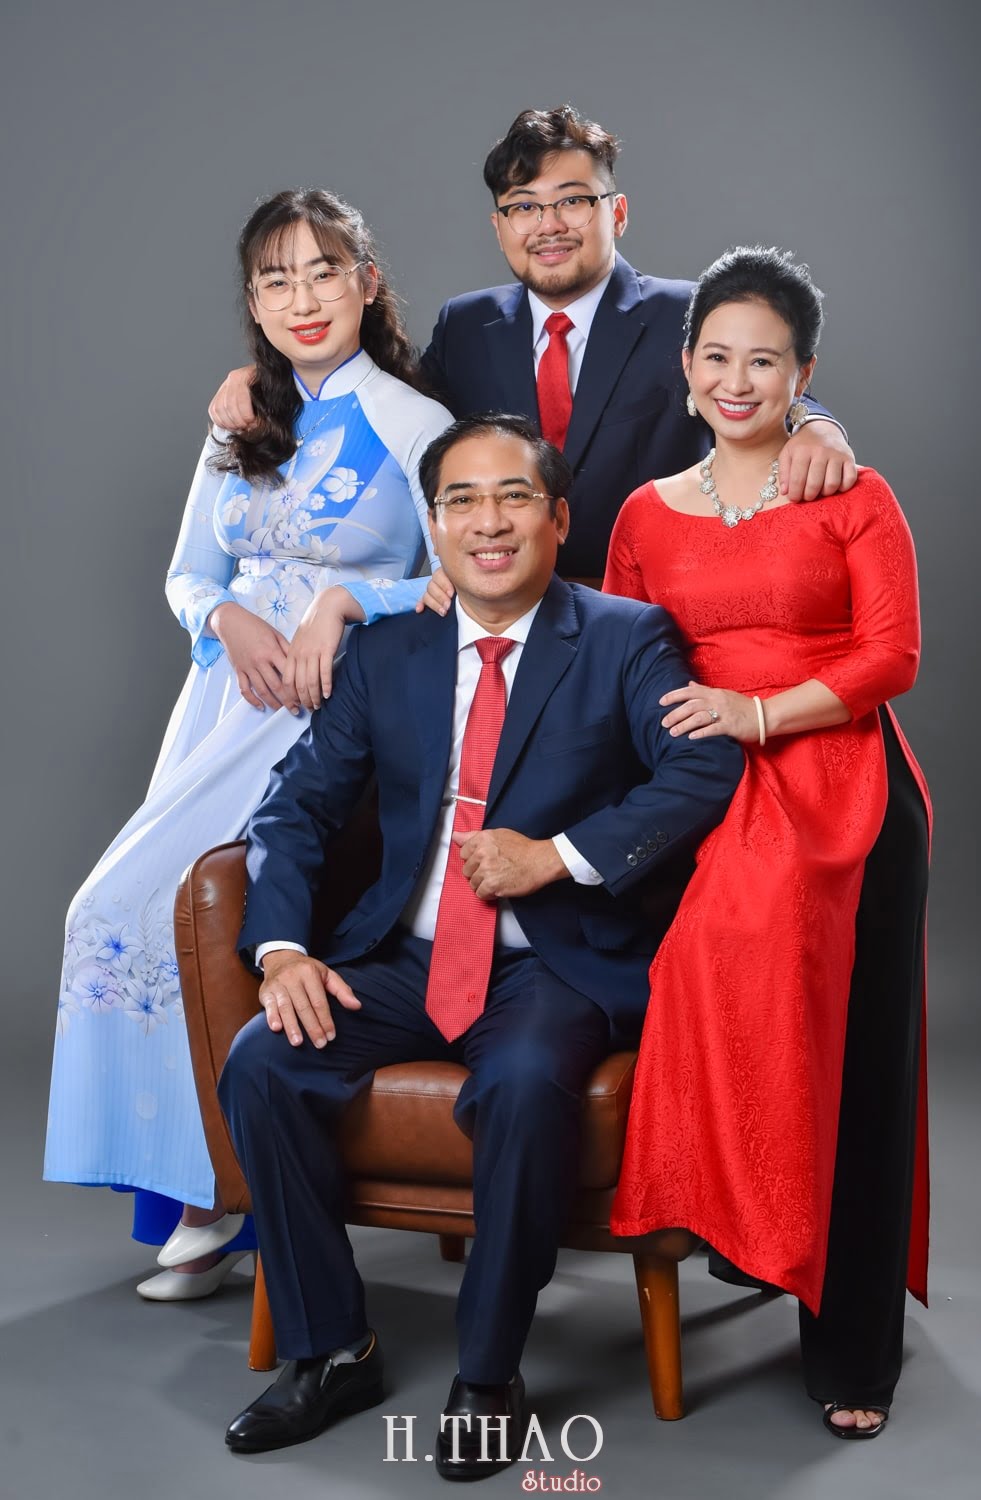 Anh gia dinh 4 nguoi 12 min - 45 cách tạo dáng chụp ảnh gia đình 4 người ấn tượng nhất - HThao Studio